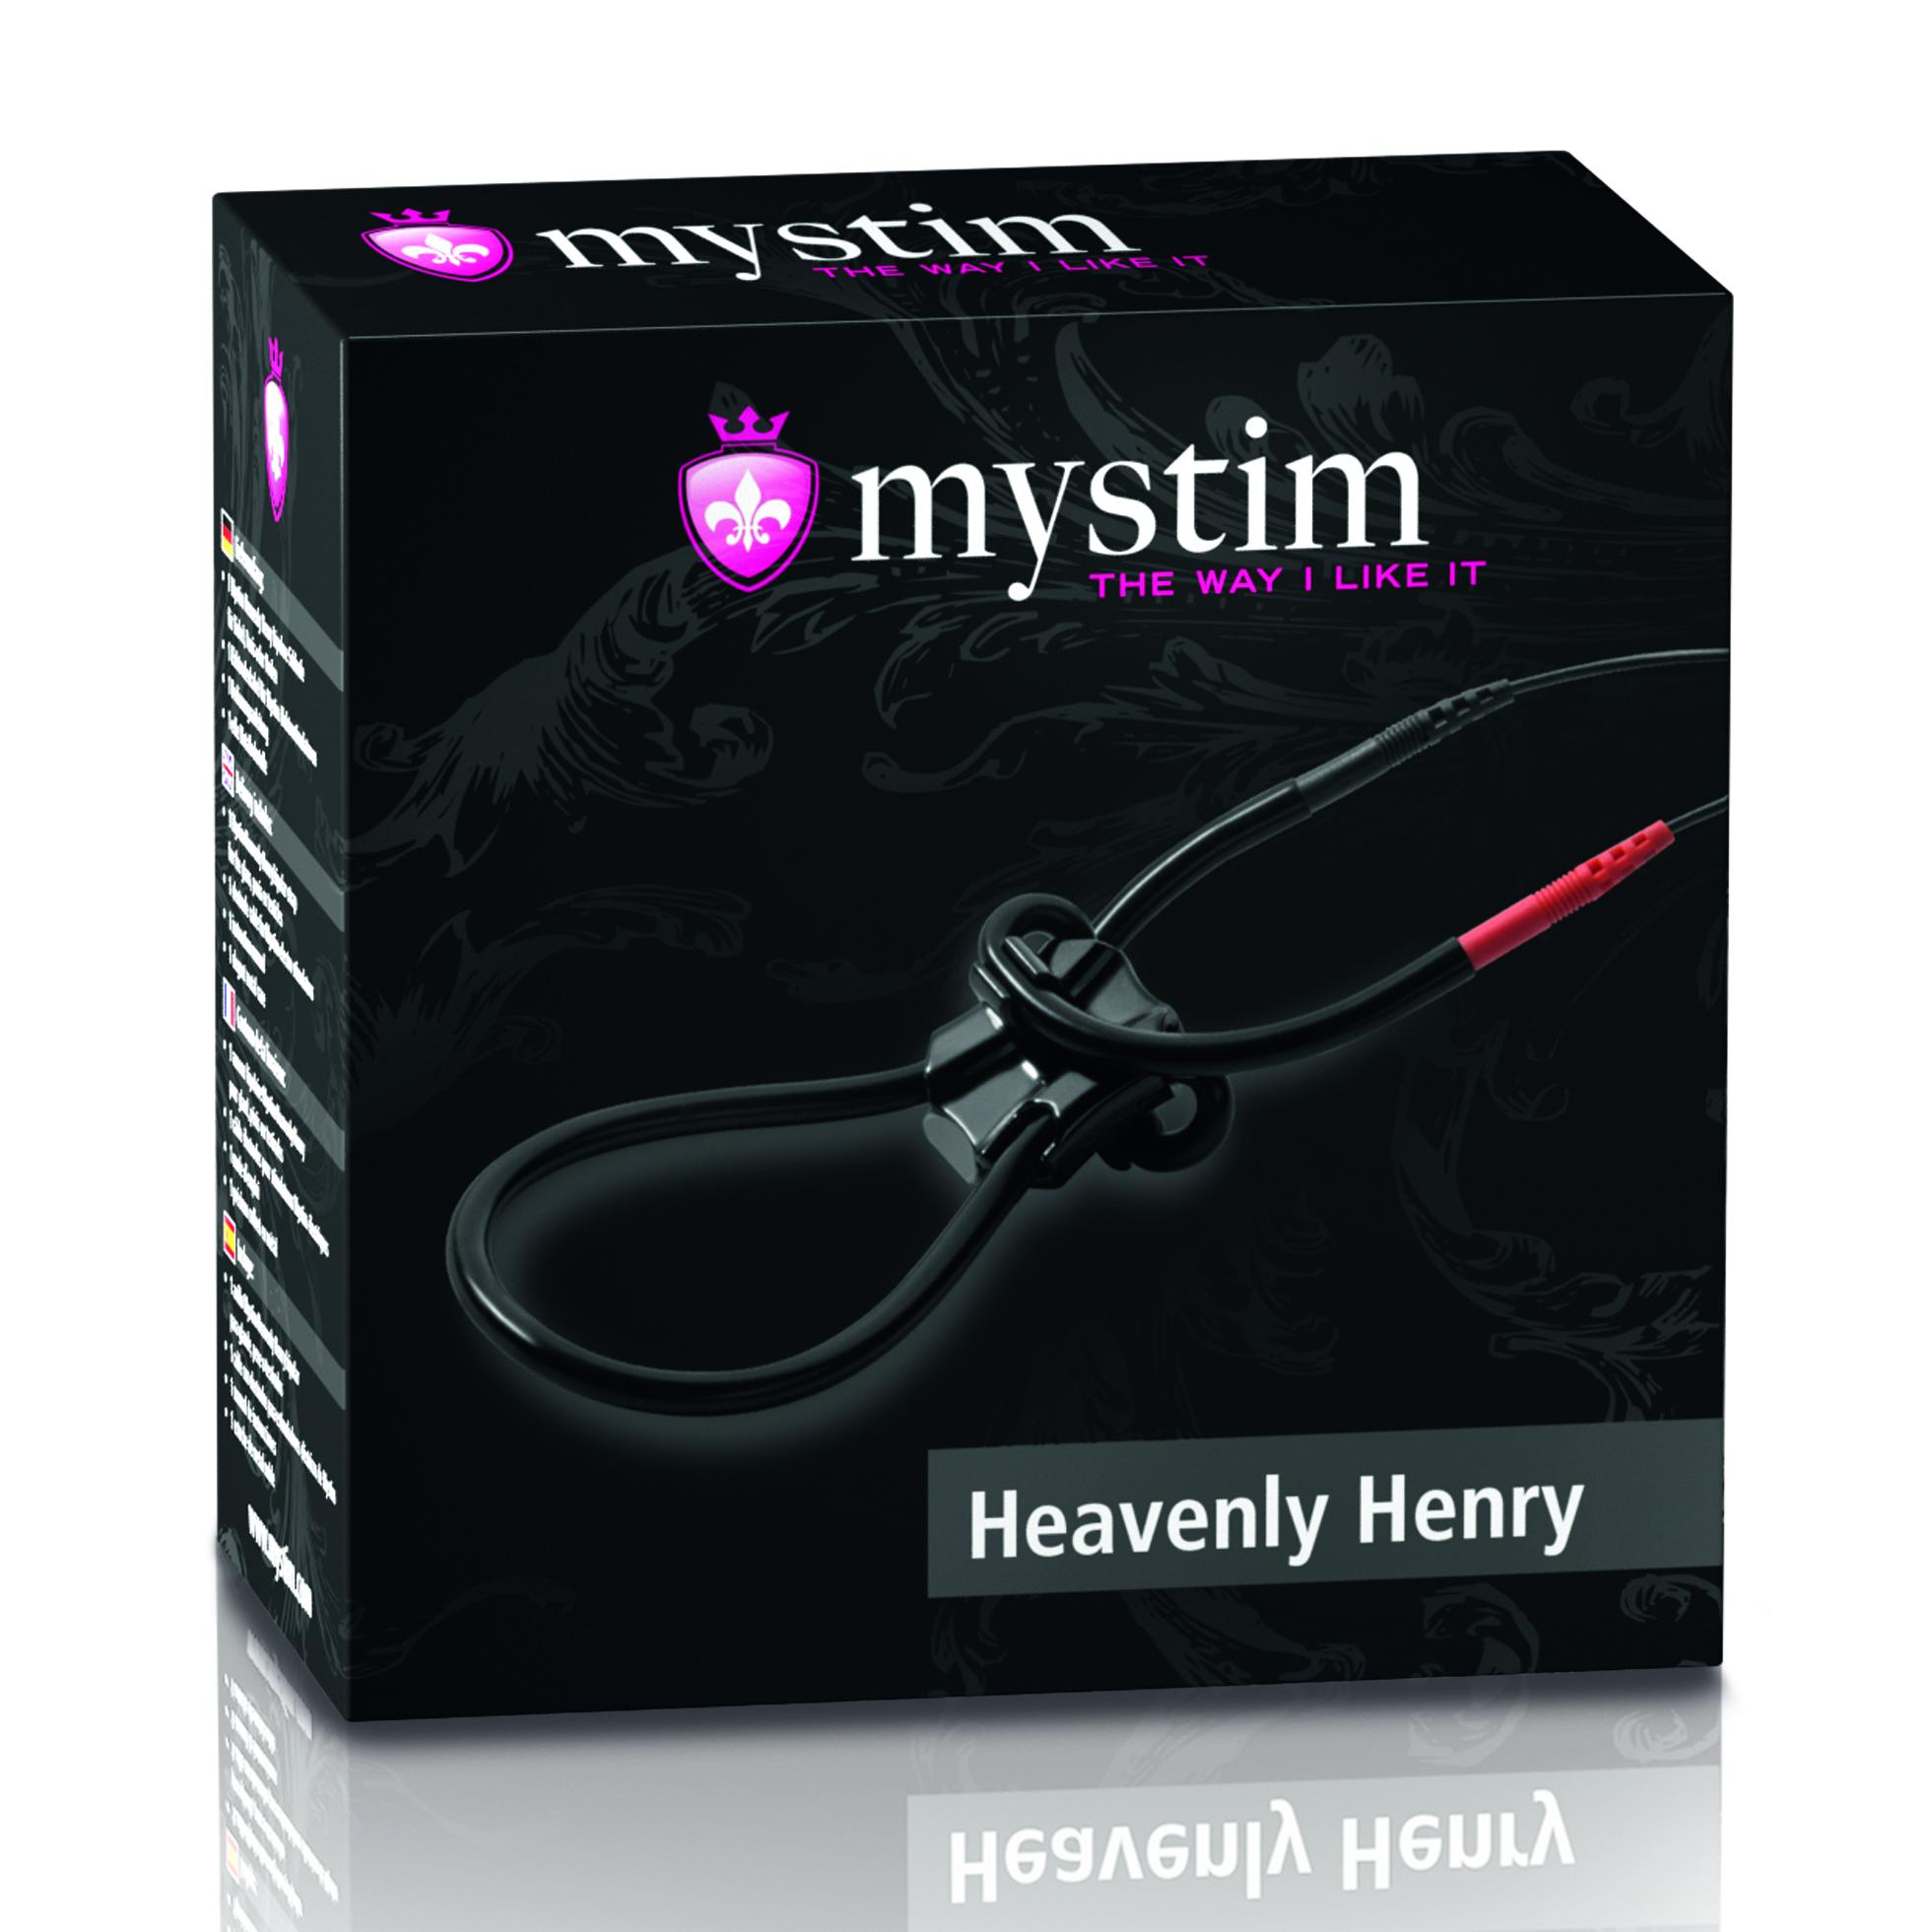 Mystim - Heavenly Henry - Slučka Na Penis